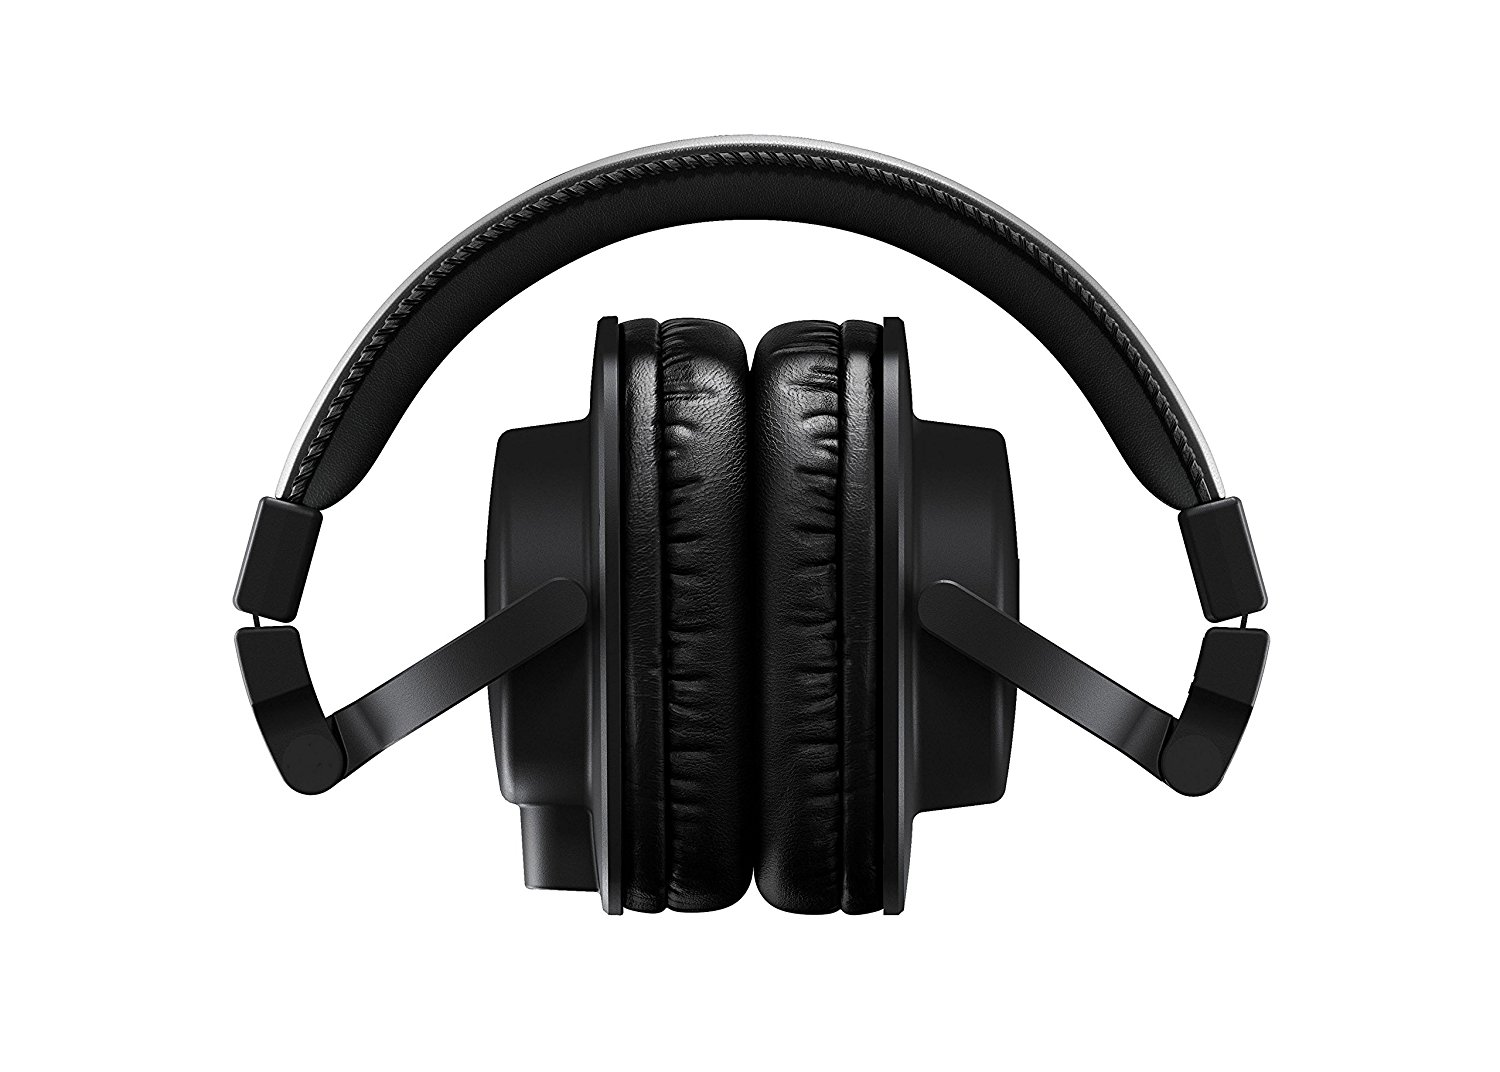 Yamaha HPH-MT5 Kopfhörer schwarz